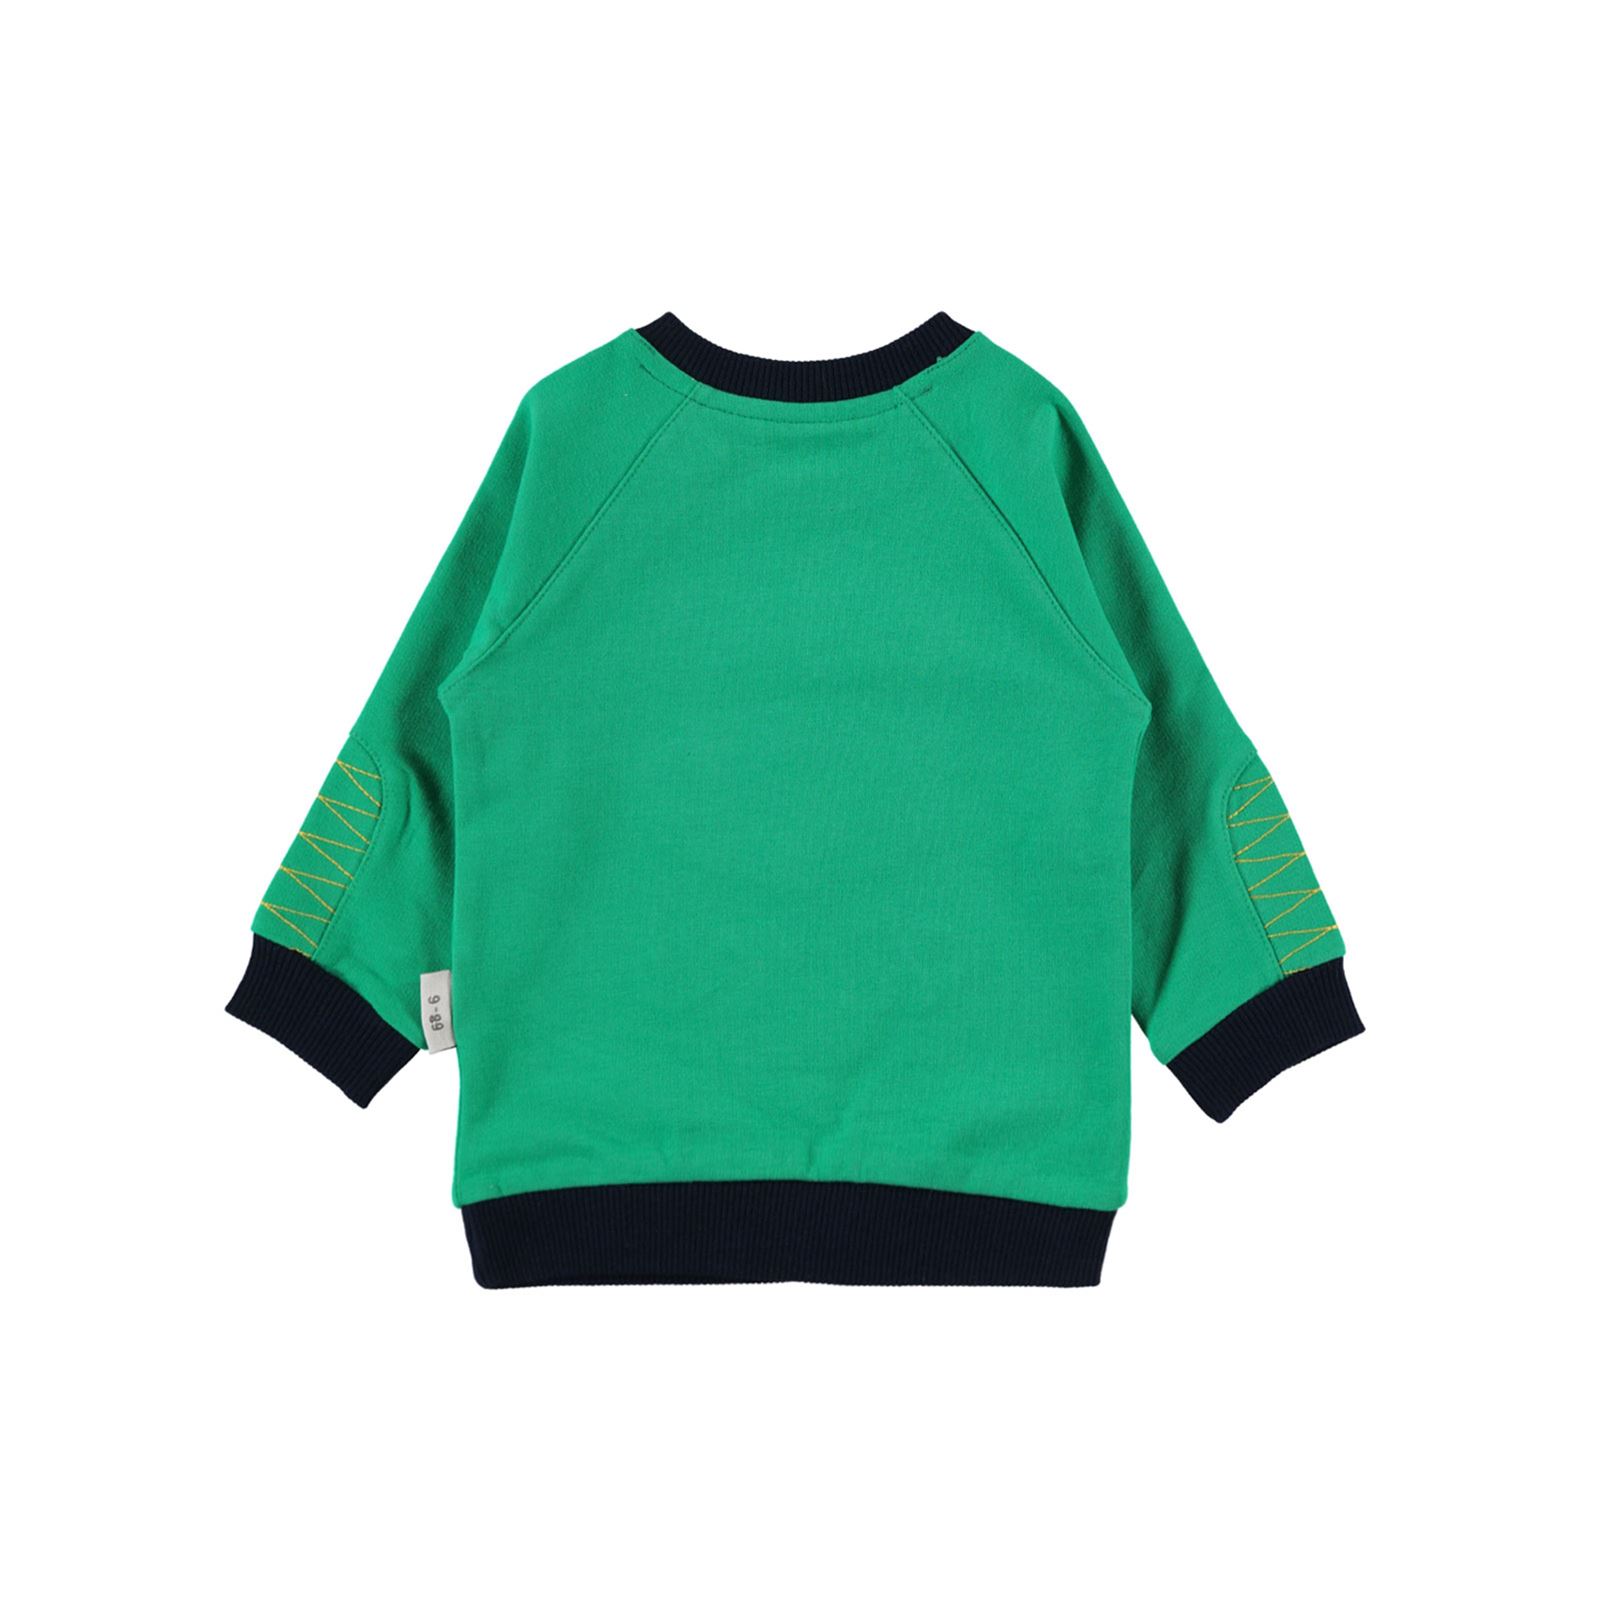 Kujju Erkek Bebek Penye Sweatshirt 6-18 Ay Yeşil